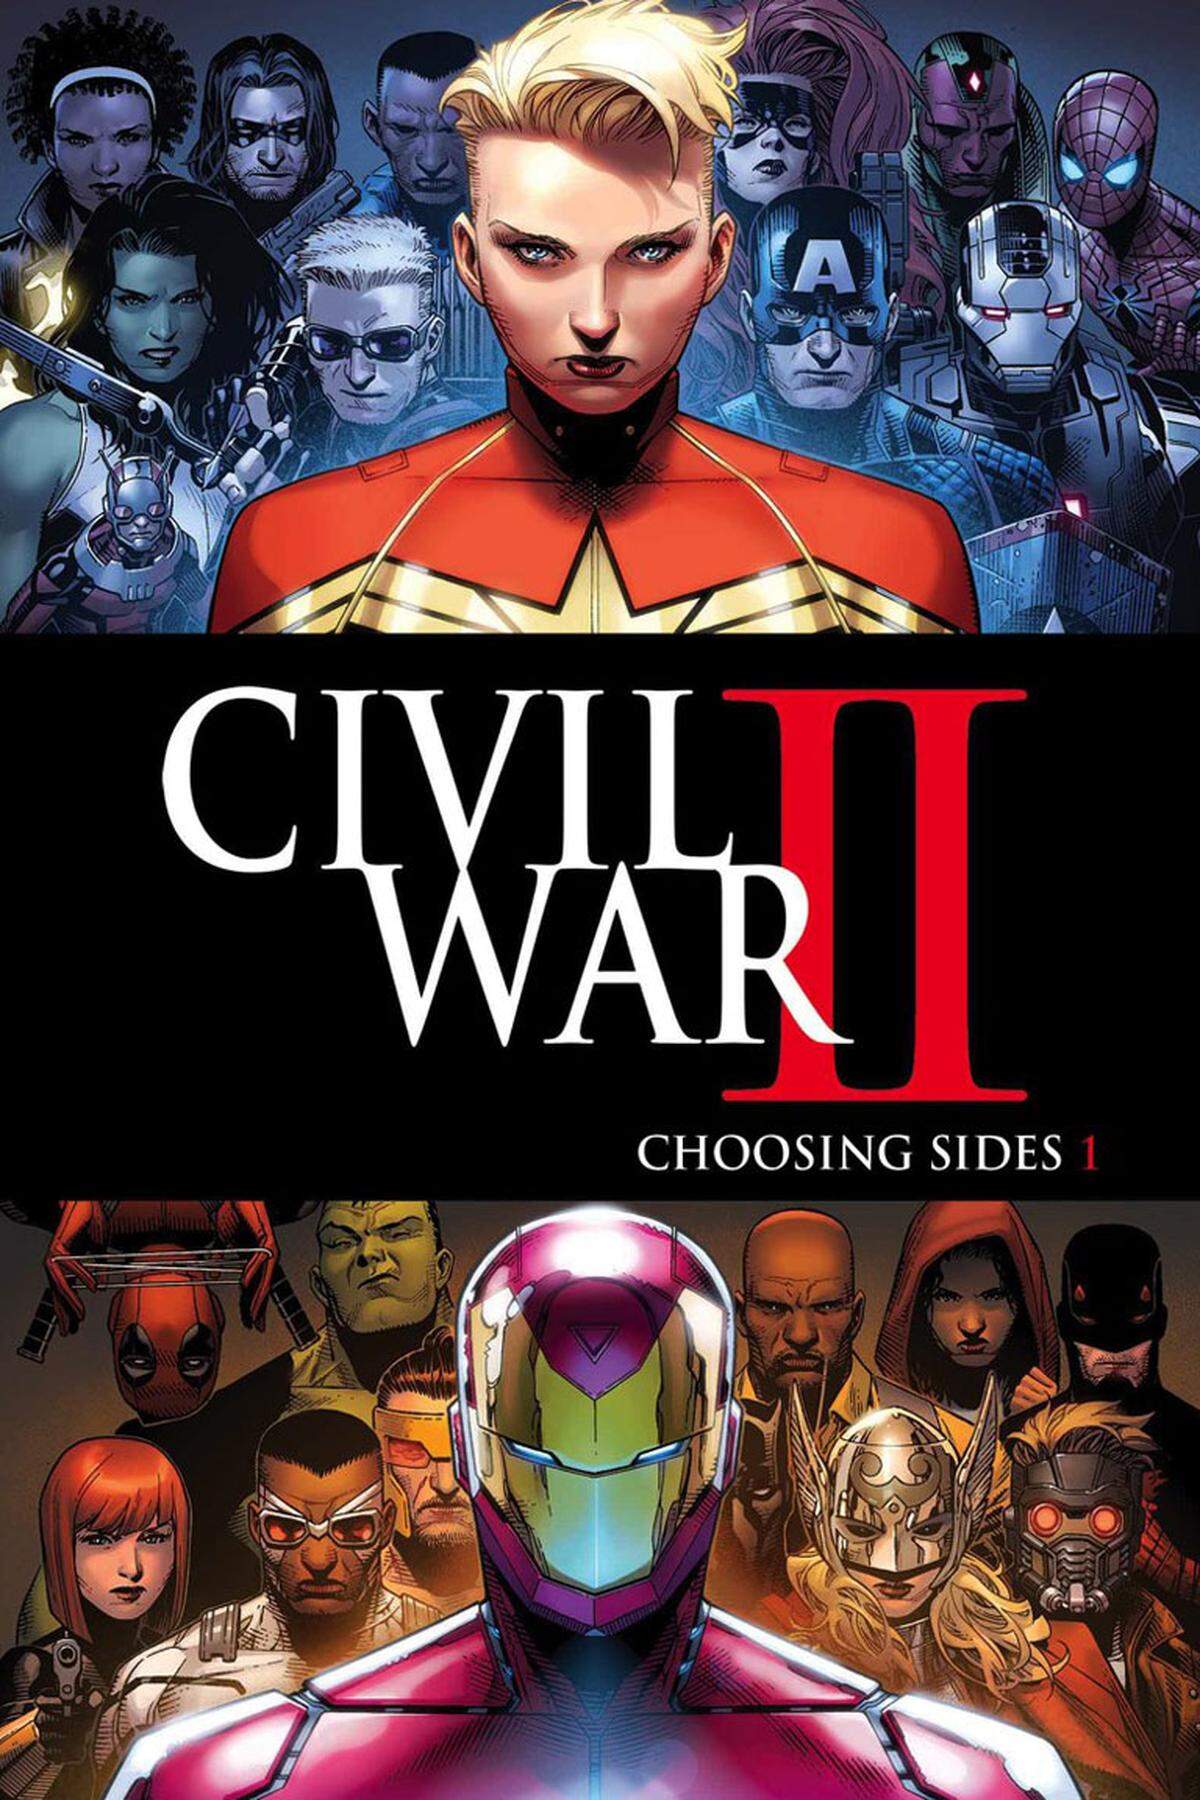 Zwei "Avengers"-Kinofilme sind ebenfalls in Vorbereitung. Teil eins von "Infinity War" soll im Mai 2018 anlaufen, Teil zwei im Mai 2019. Die Wartezeit verkürzt der Comicband "Civil War II", der schon im Juni diesen Jahres erhältlich sein wird. Man darf gespannt sein, welche Superhelden-Allianzen sich dort bilden werden ...